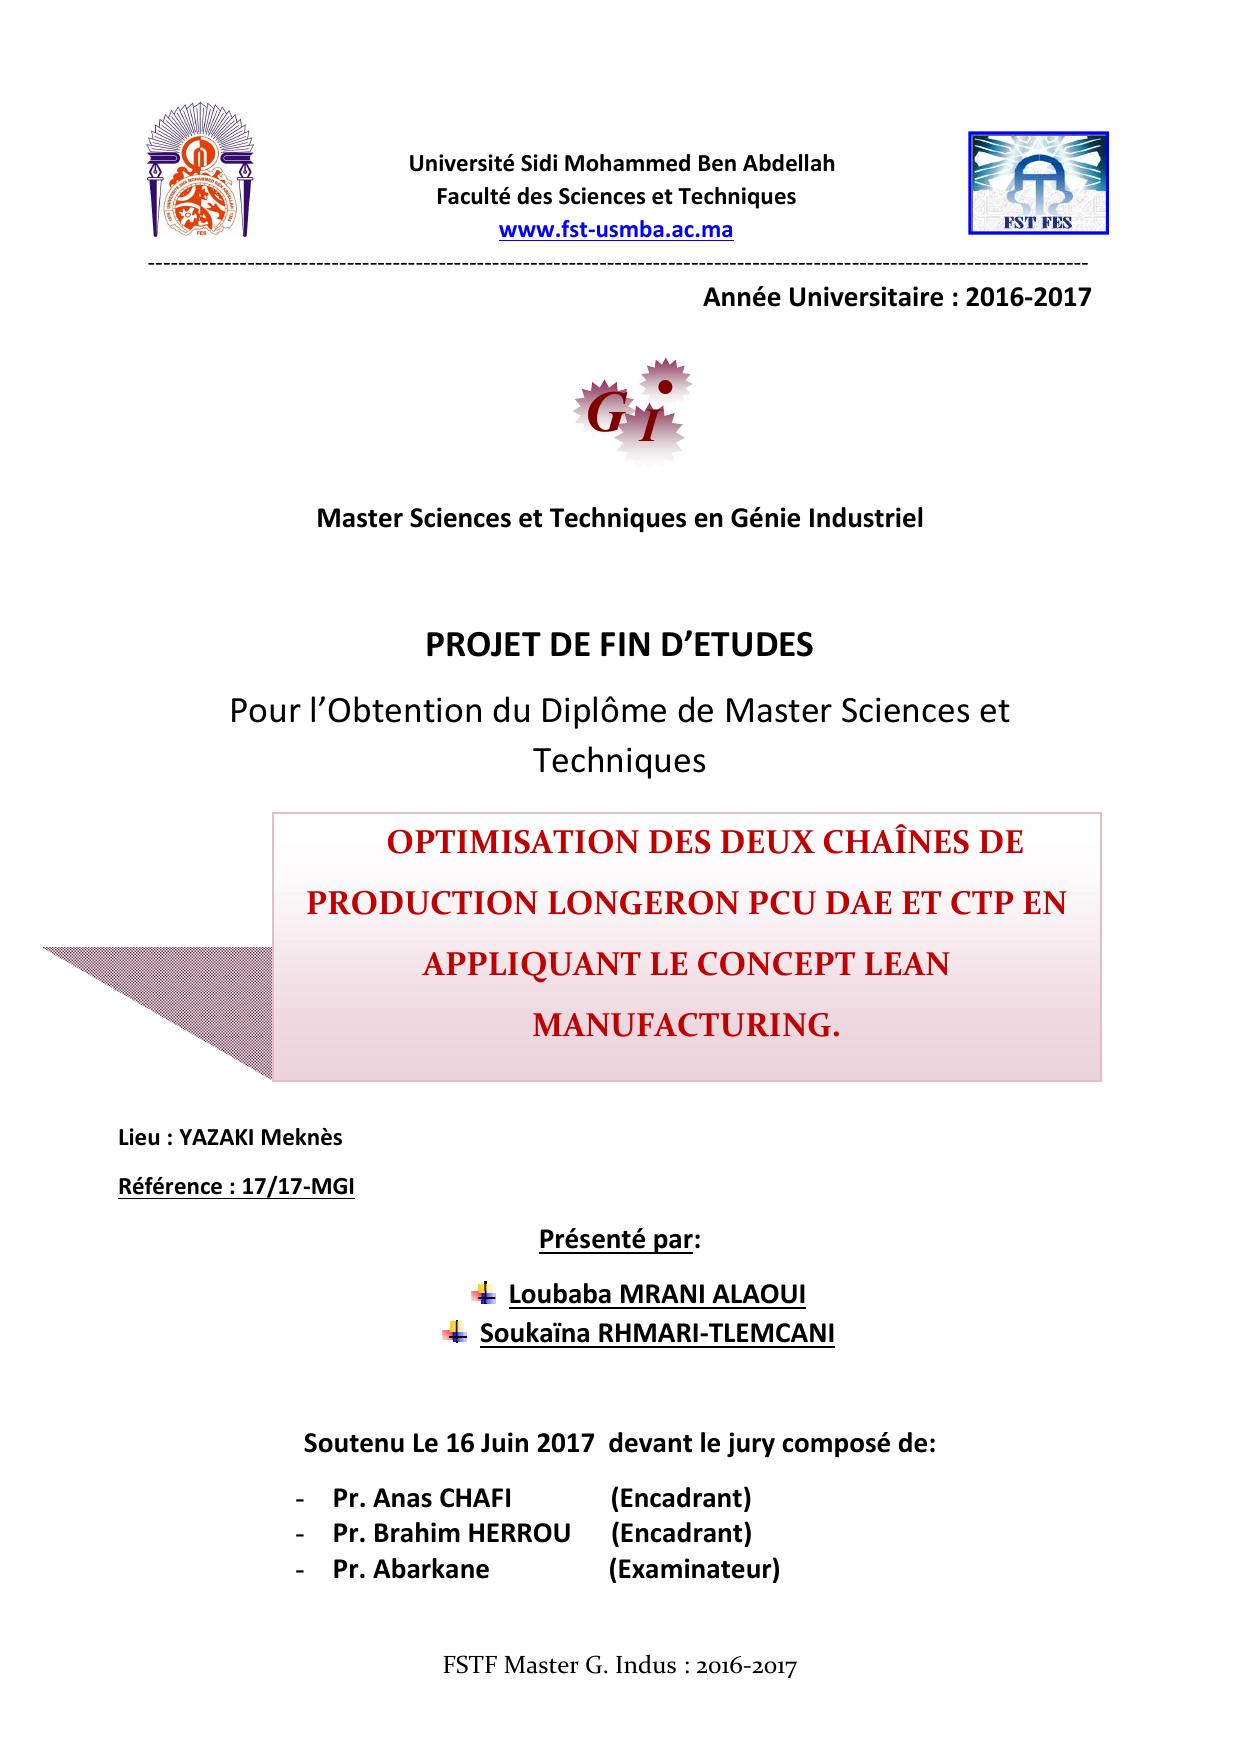 Optimisation des deux chaines de production Longron PCU DAE et CTP en appliquant le concept Lean Manufaturing